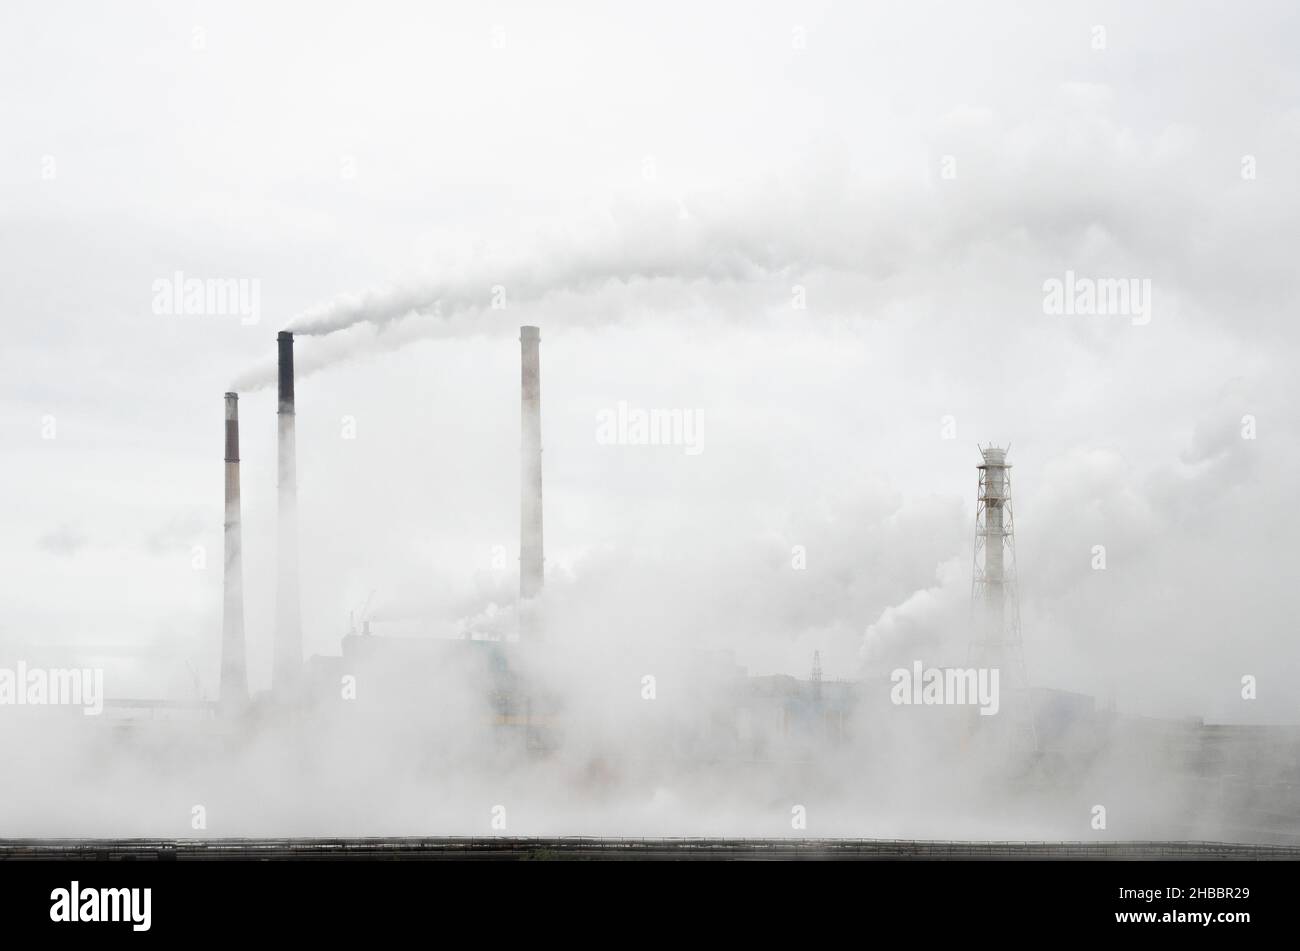 La fumée des cheminées d'une usine métallurgique s'élève dans le ciel.Tout est en fumée.Empreinte carbone Banque D'Images